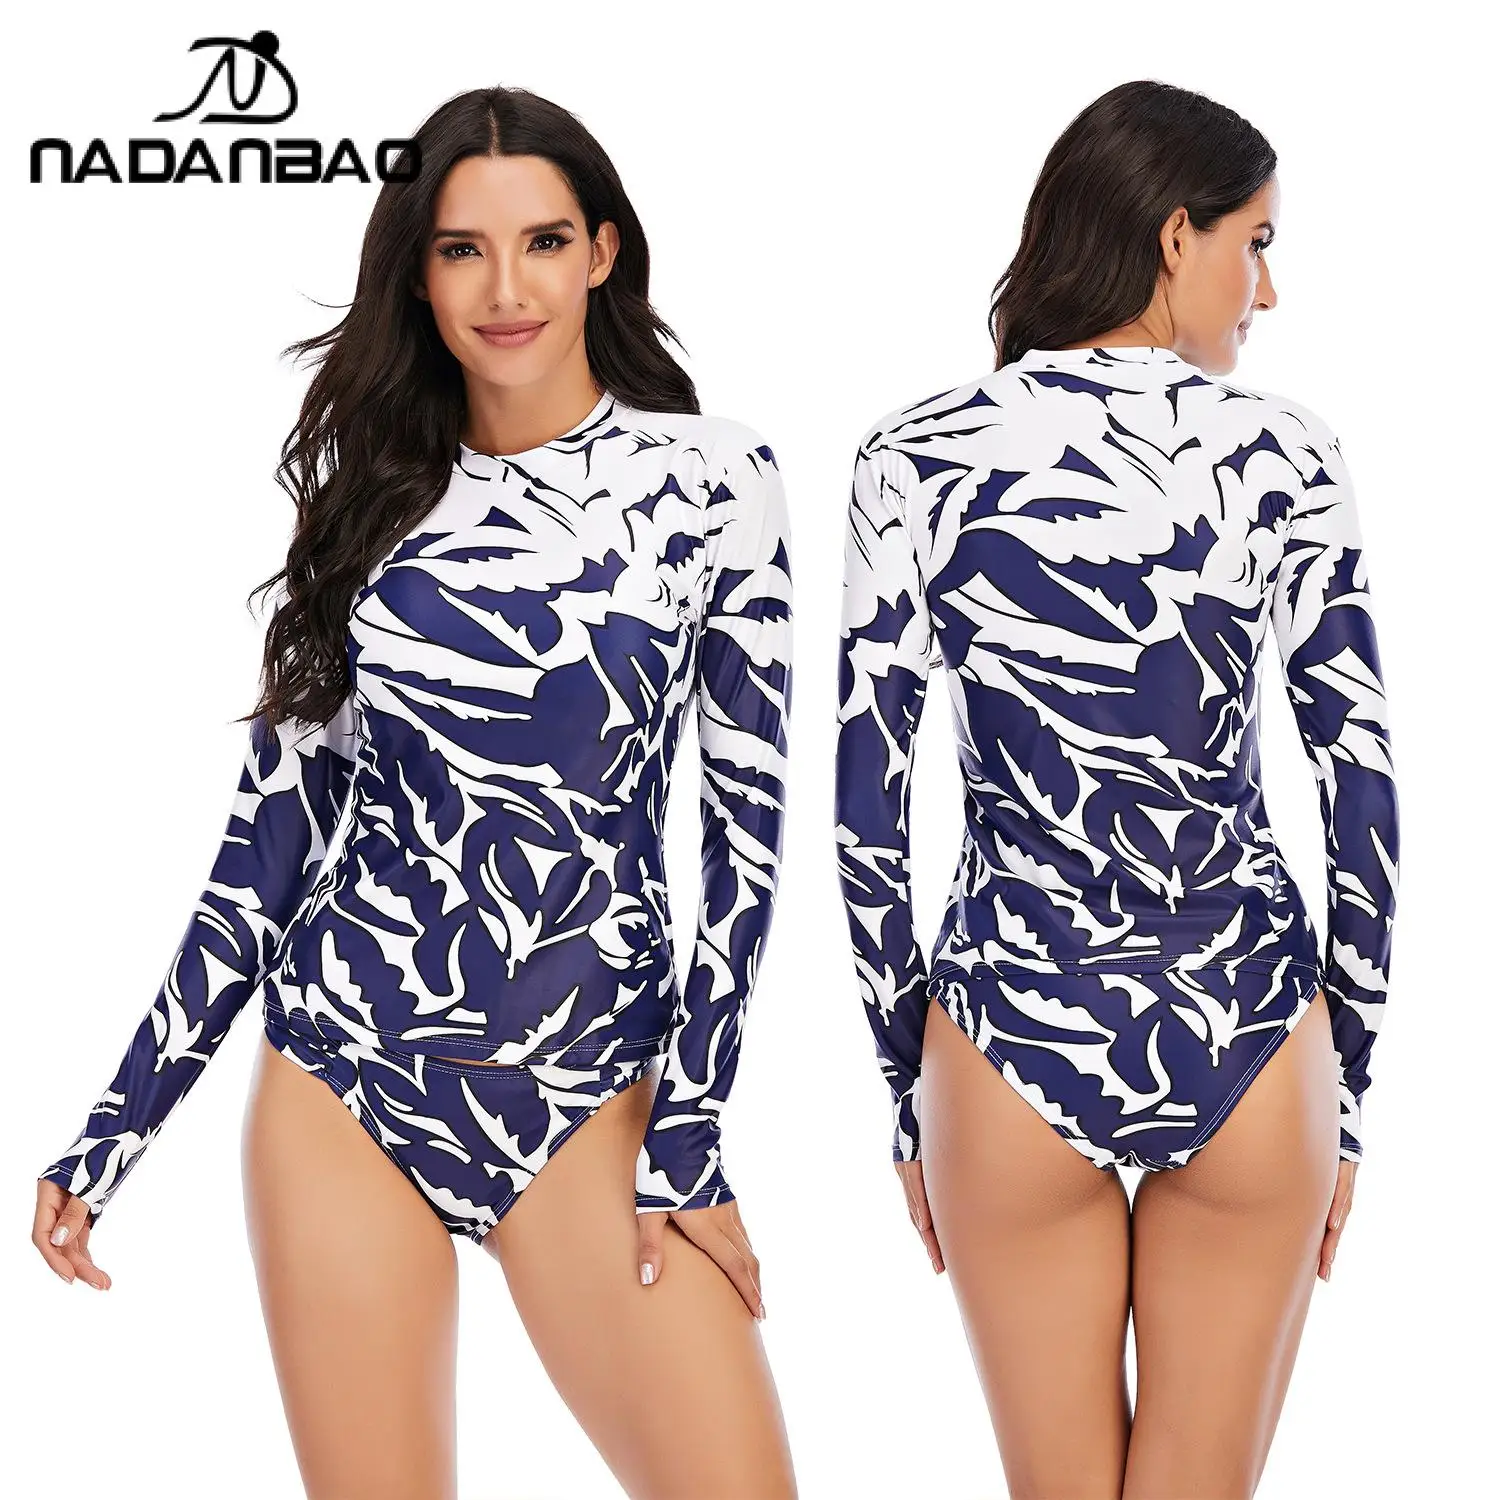 NADANBAO лето для женщин купальник 2021 Surf водолазный костюм одежда плавания с длинным